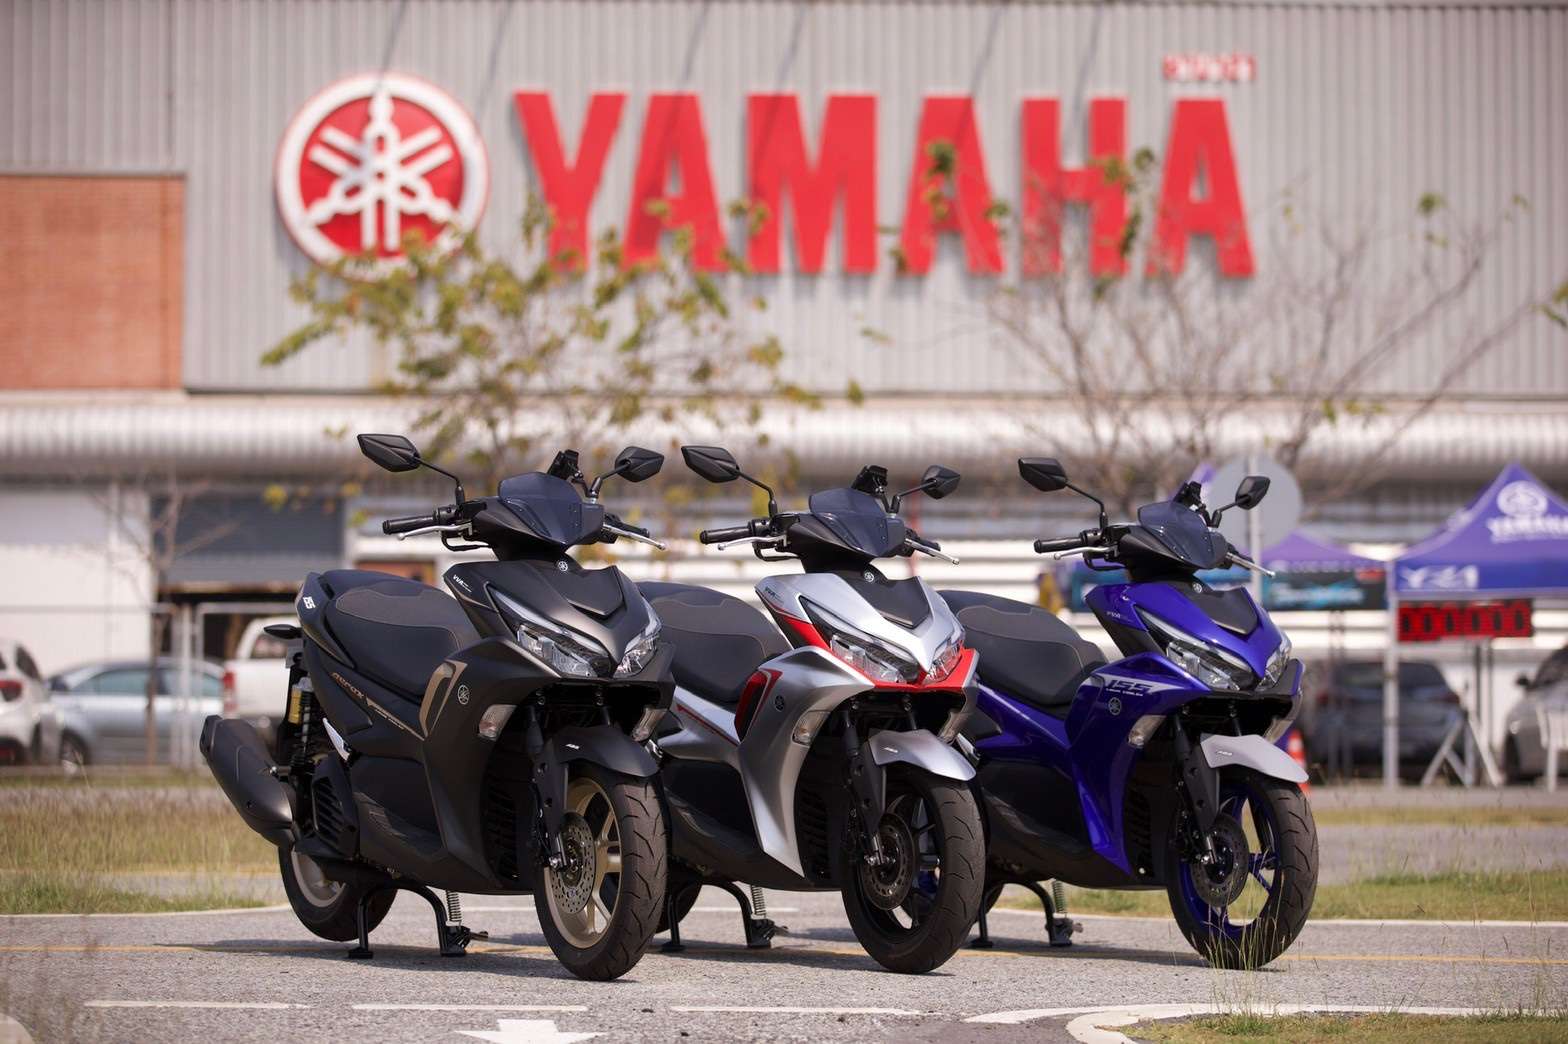 02 ยามาฮ่าส่ง All New YAMAHA AEROX สุดยอดผู้นำรถจักรยานยนต์สปอร์ตออโตเมติก พร้อมเทคโนโลยี Y-Connect เชื่อมชีวิตคุณเข้ากับรถคู่ใจ - 021